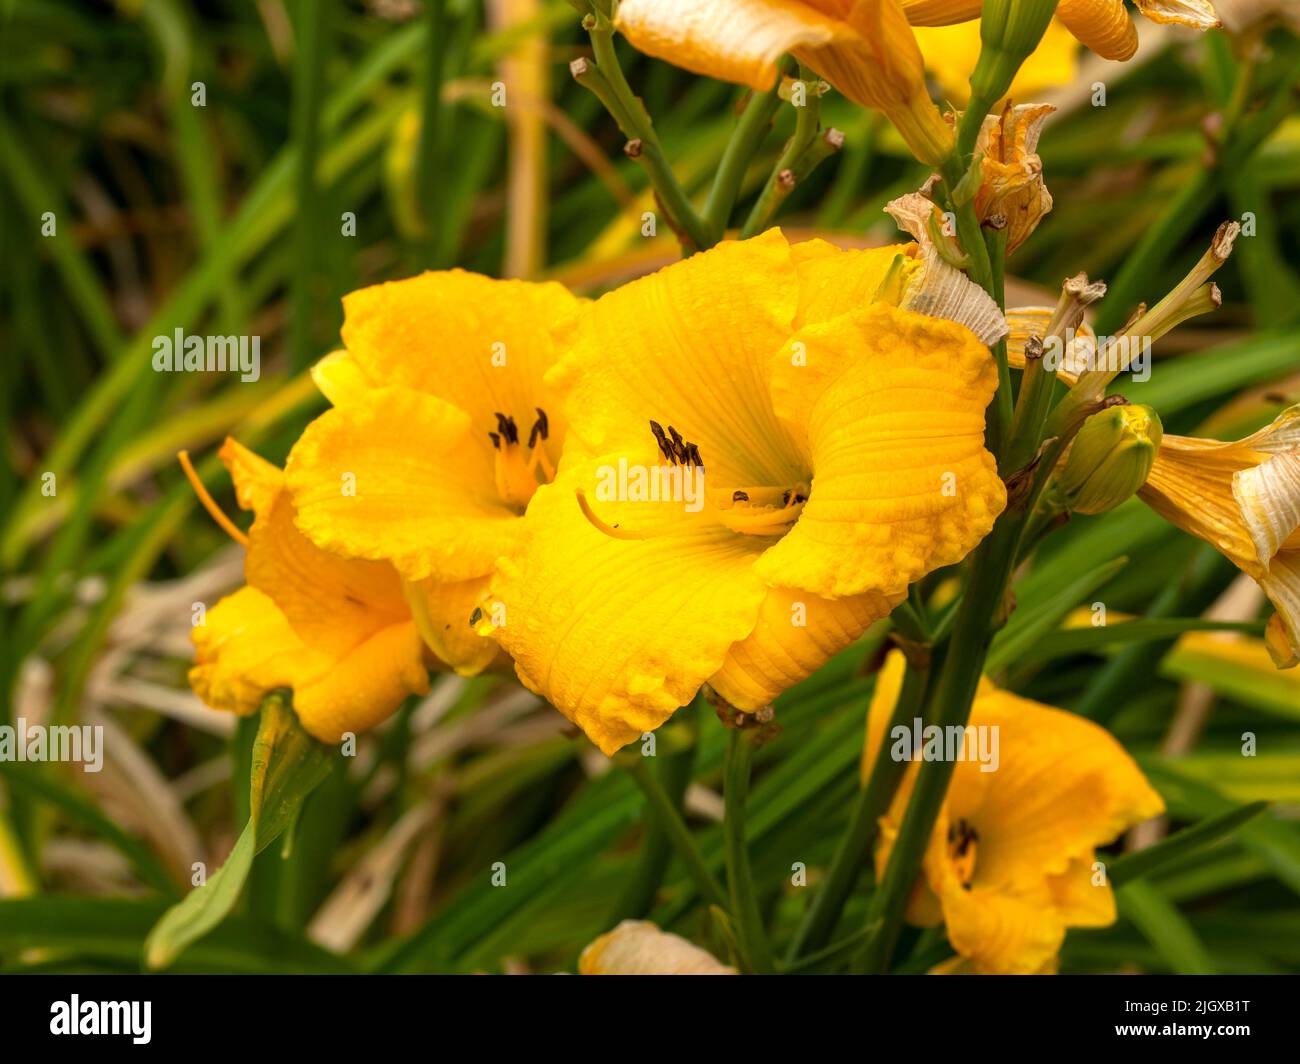 Gelbe Hemerocallis Taglilie Sorte Bakabana blüht in einem Garten Stockfoto